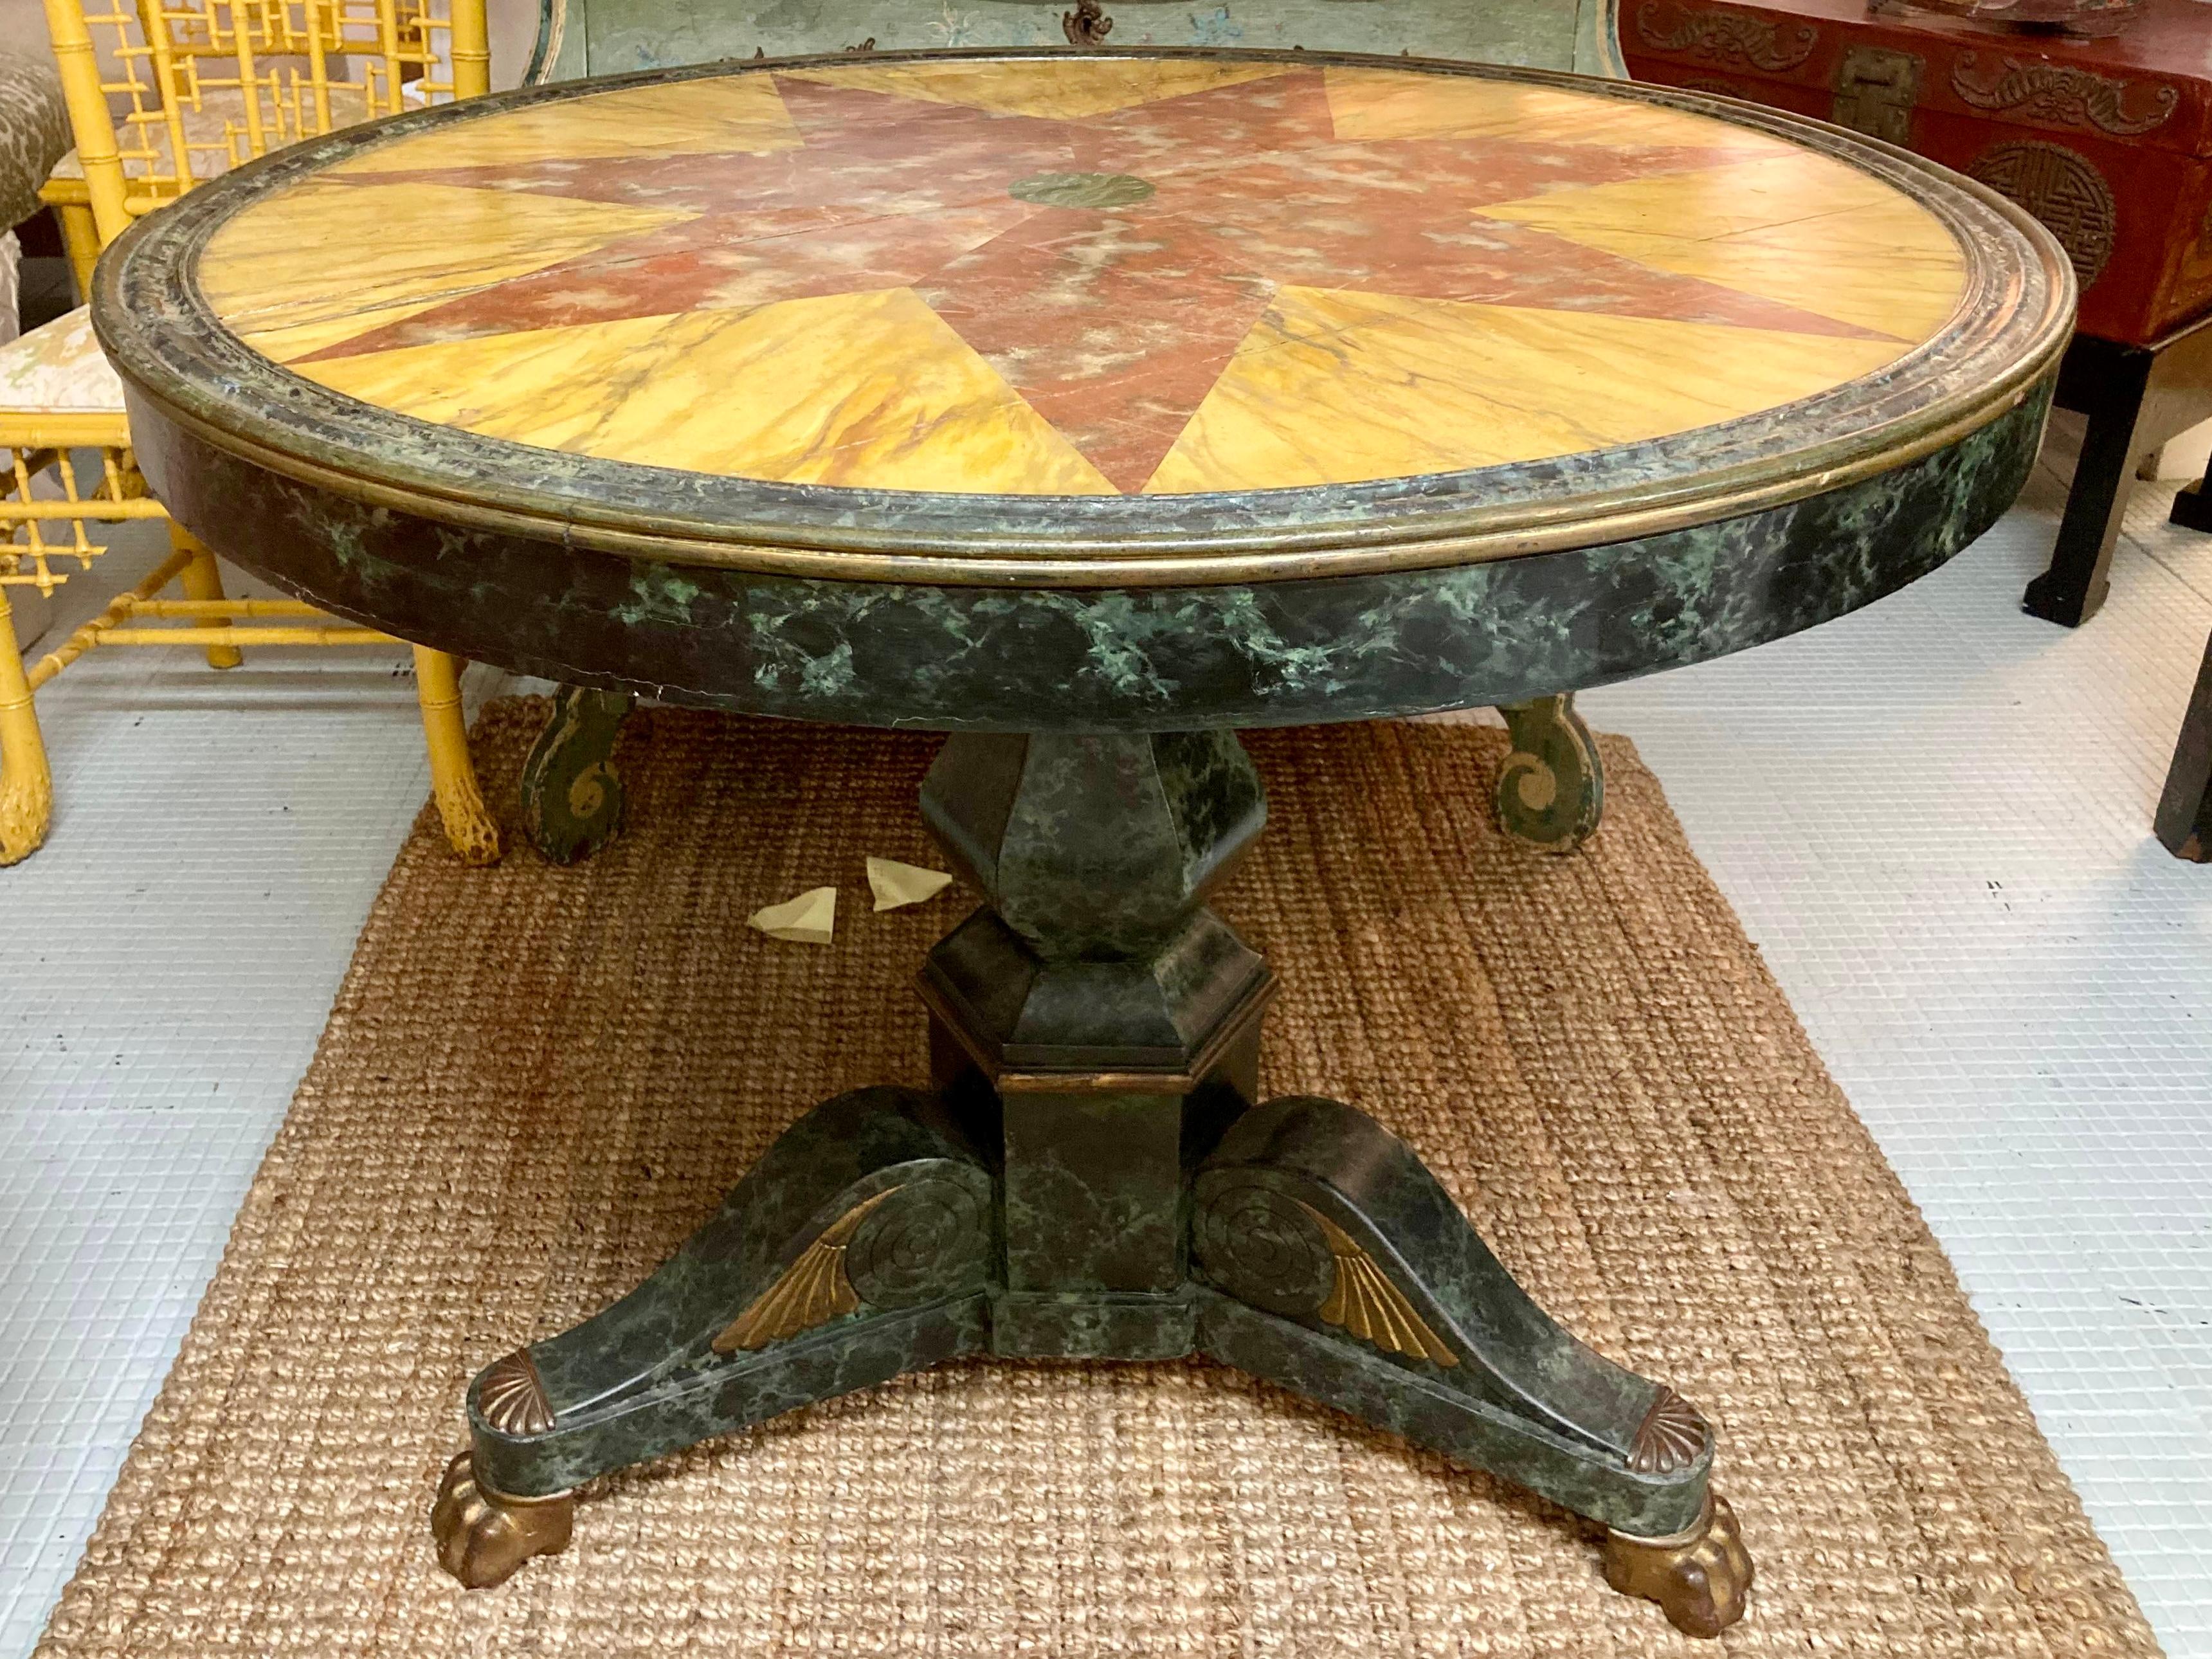 Table de salle à manger italienne à piédestal en bois rond en Pietra Dura faussement peinte. Cette table peut être utilisée comme table de salle à manger ou comme table centrale. Il ressemble à du marbre, mais il s'agit de bois peint. Ajoutez un